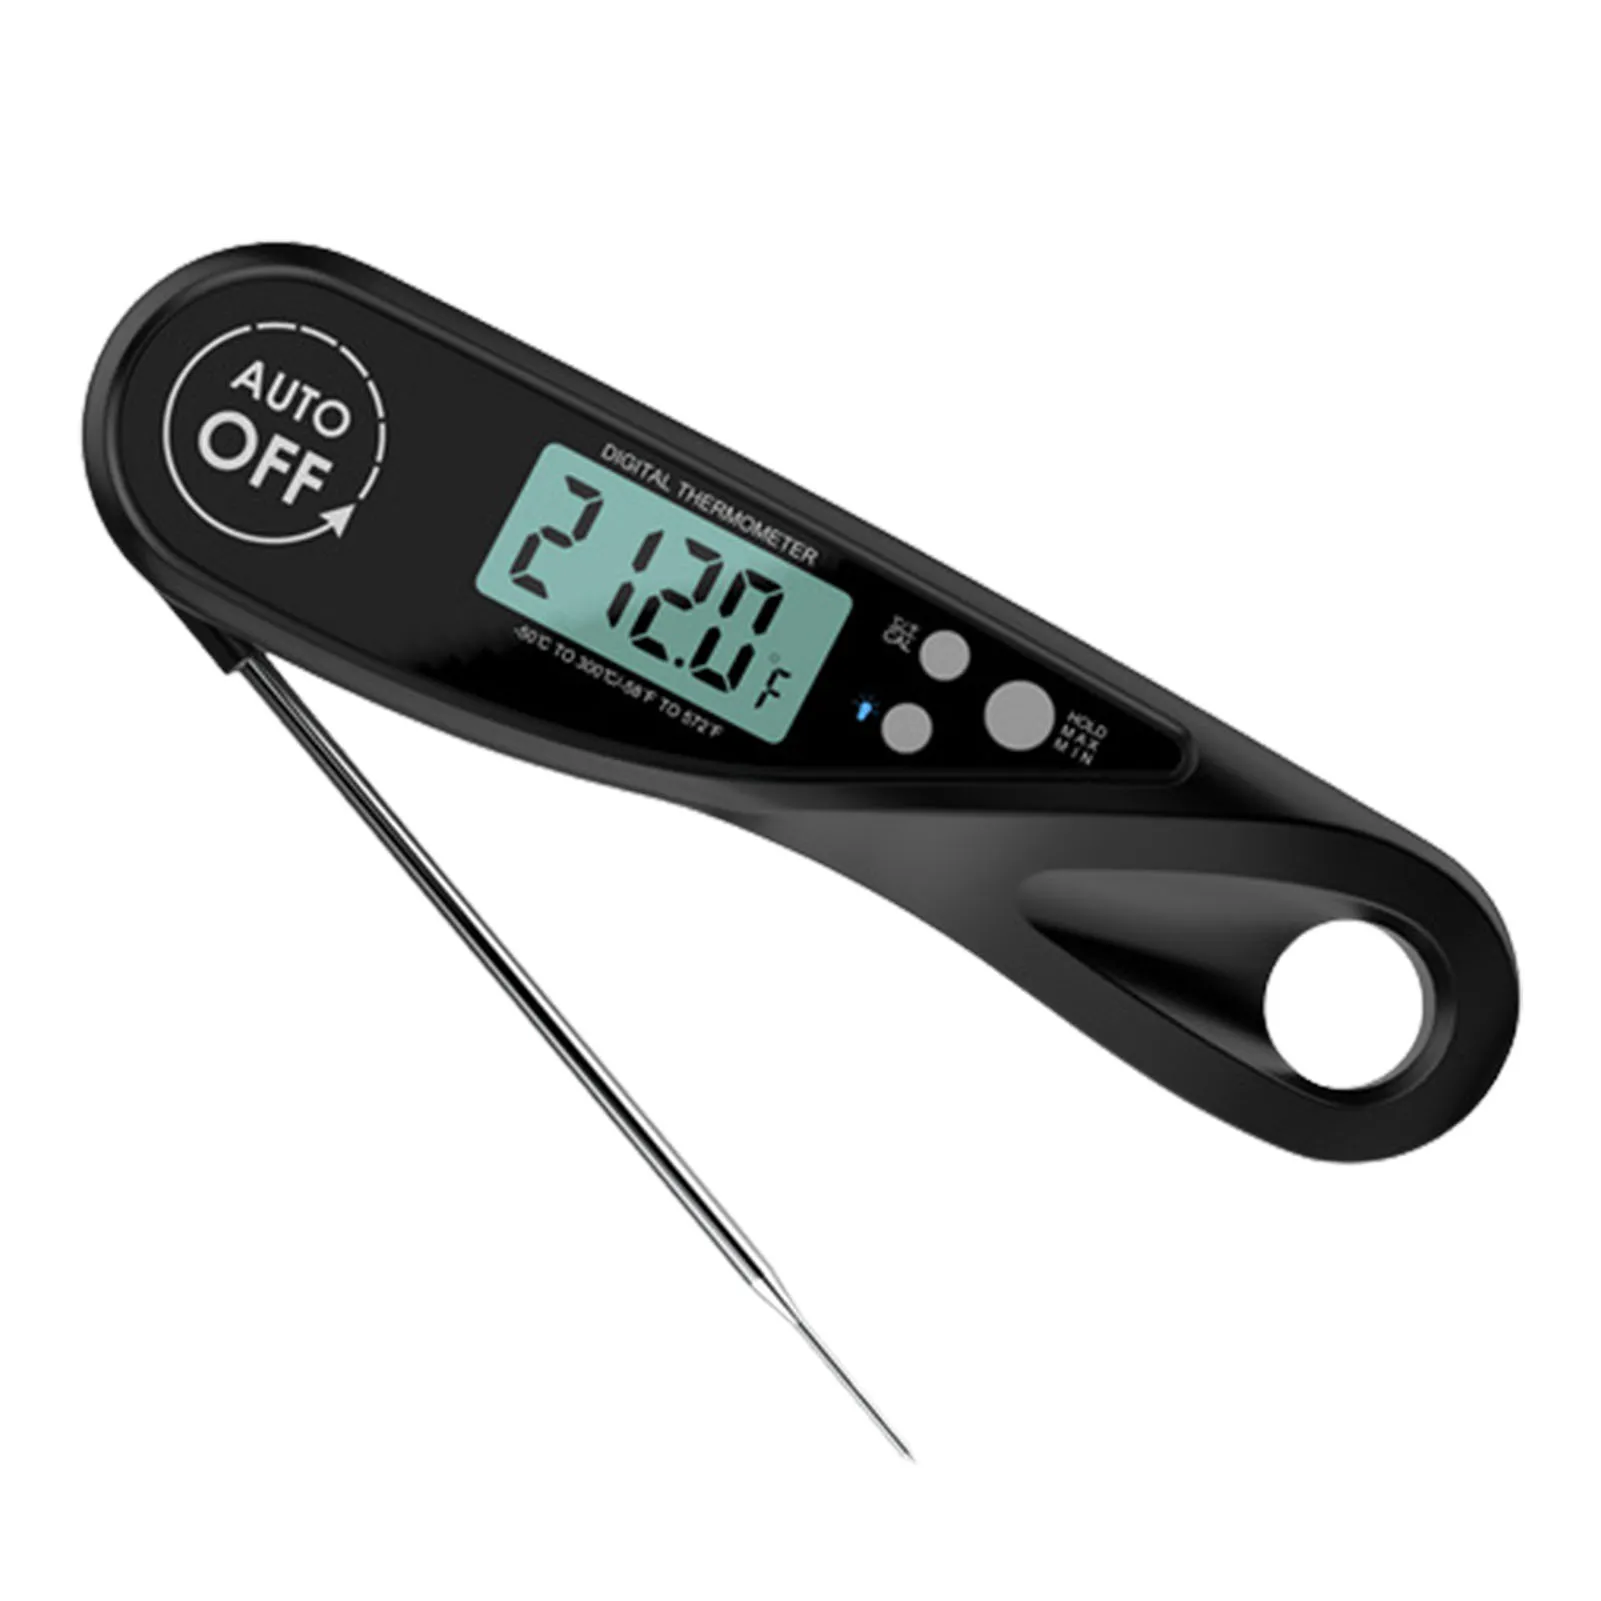 

Цифровой Кухонный Термометр для барбекю, прибор с ЖК-дисплеем и подсветкой для глубокой жарки мяса, приготовления выпечки, гриля